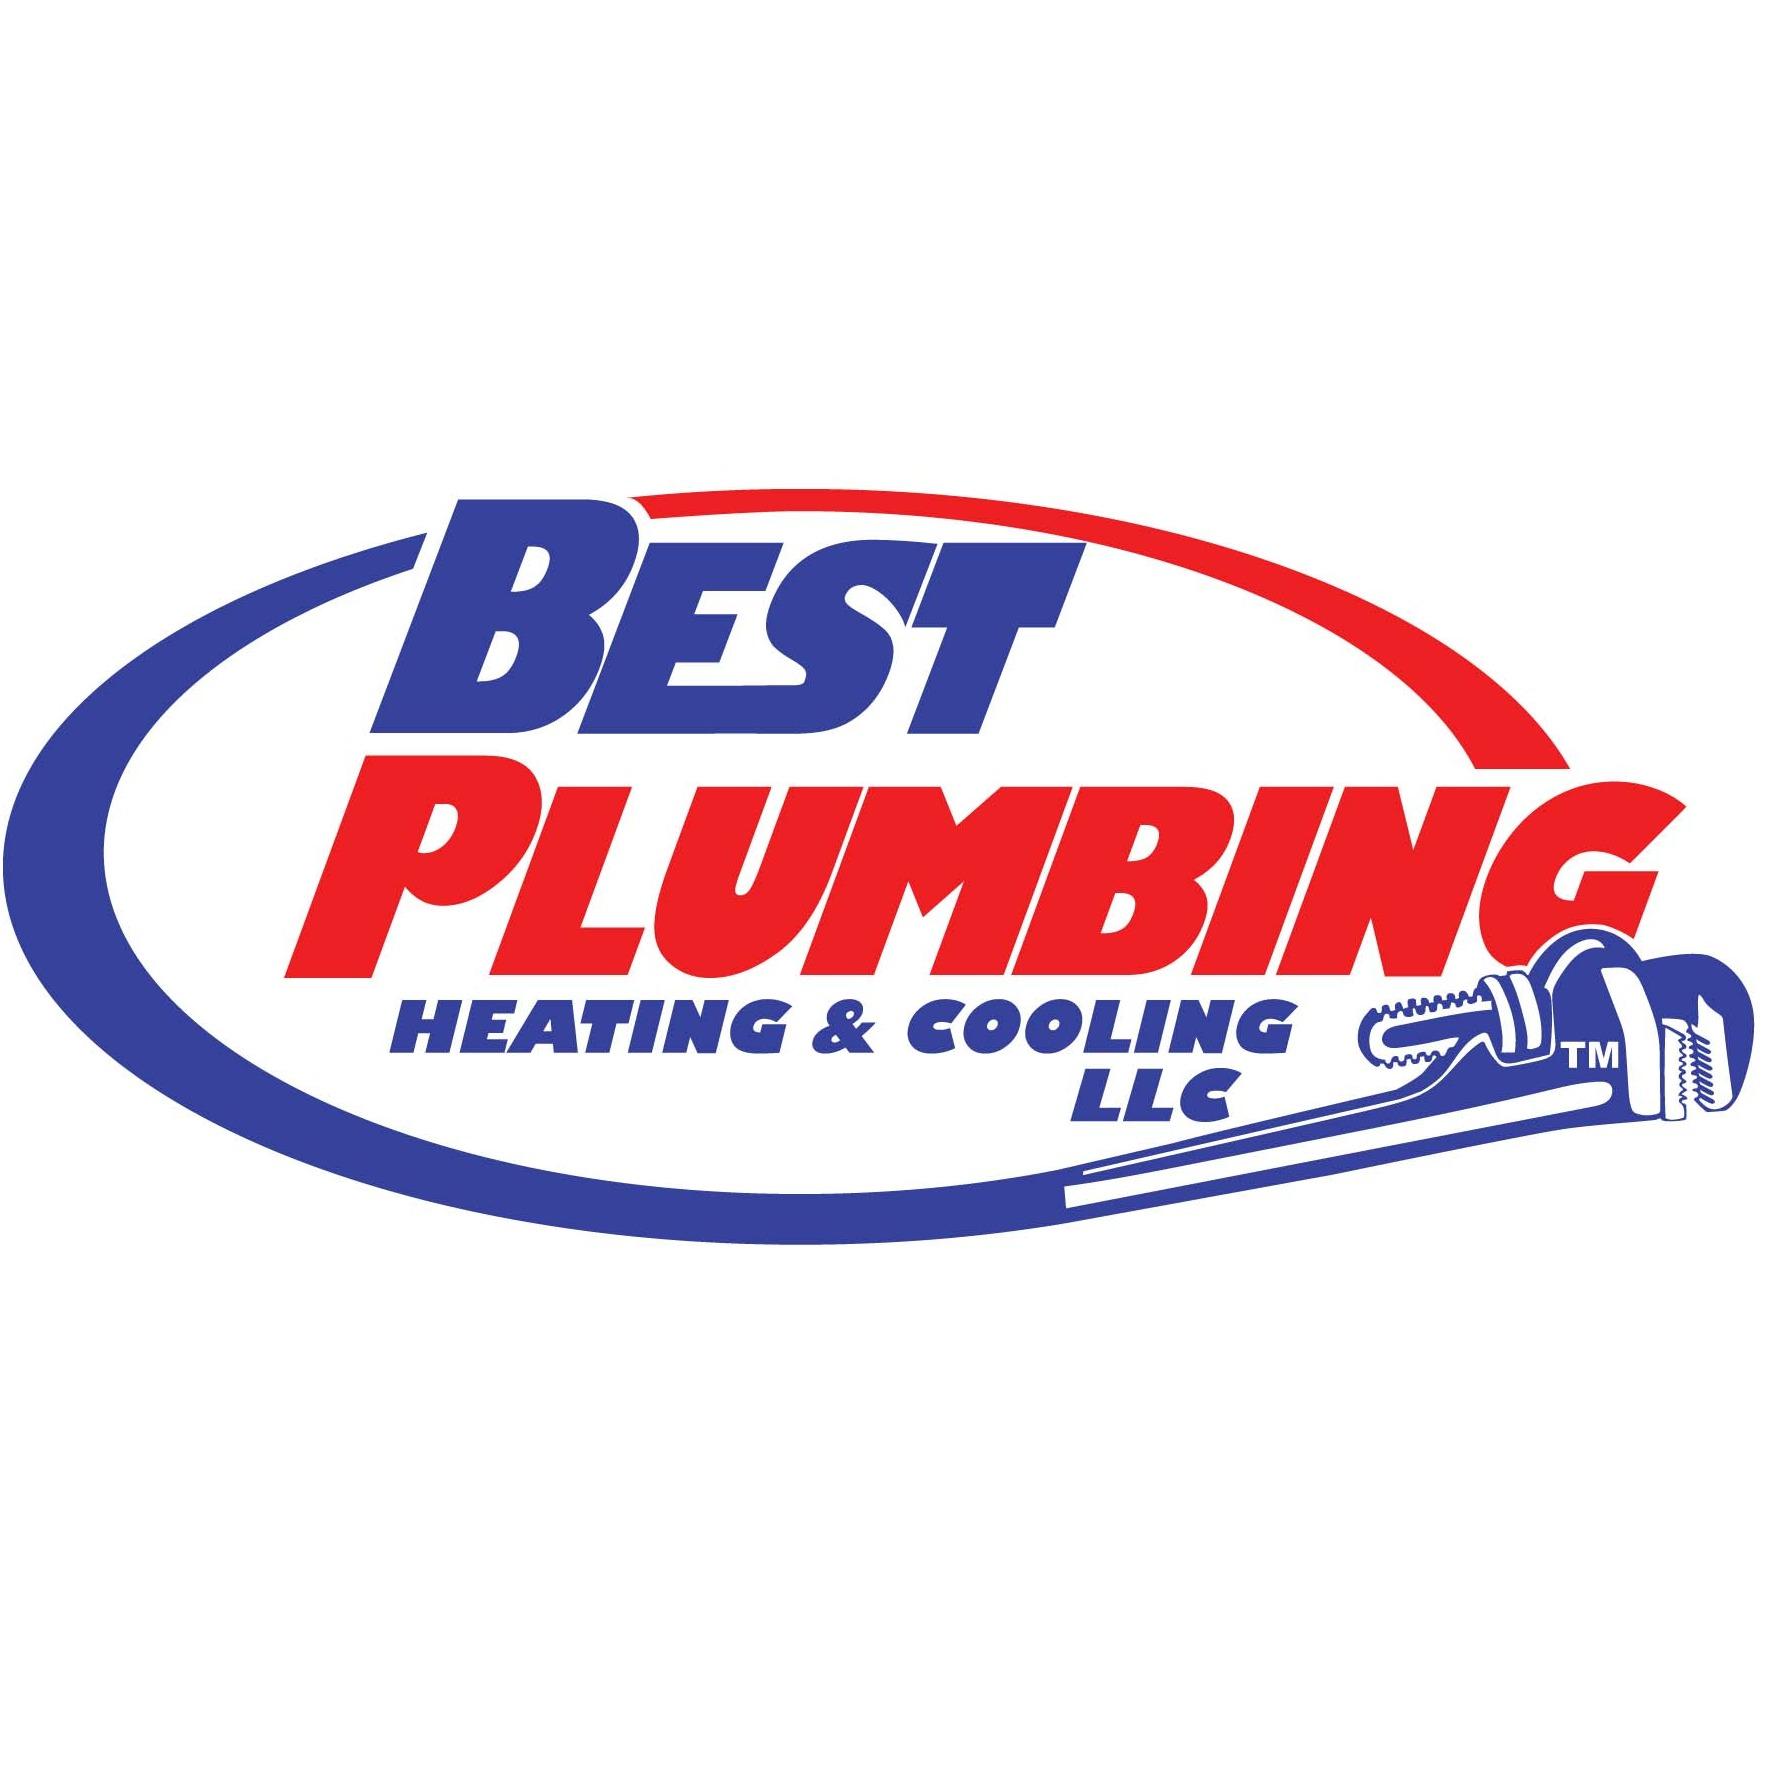 Best Plumbing, Heating & Cooling LLC - Scottsbluff, NE 69361 - (308)633-2378 | ShowMeLocal.com